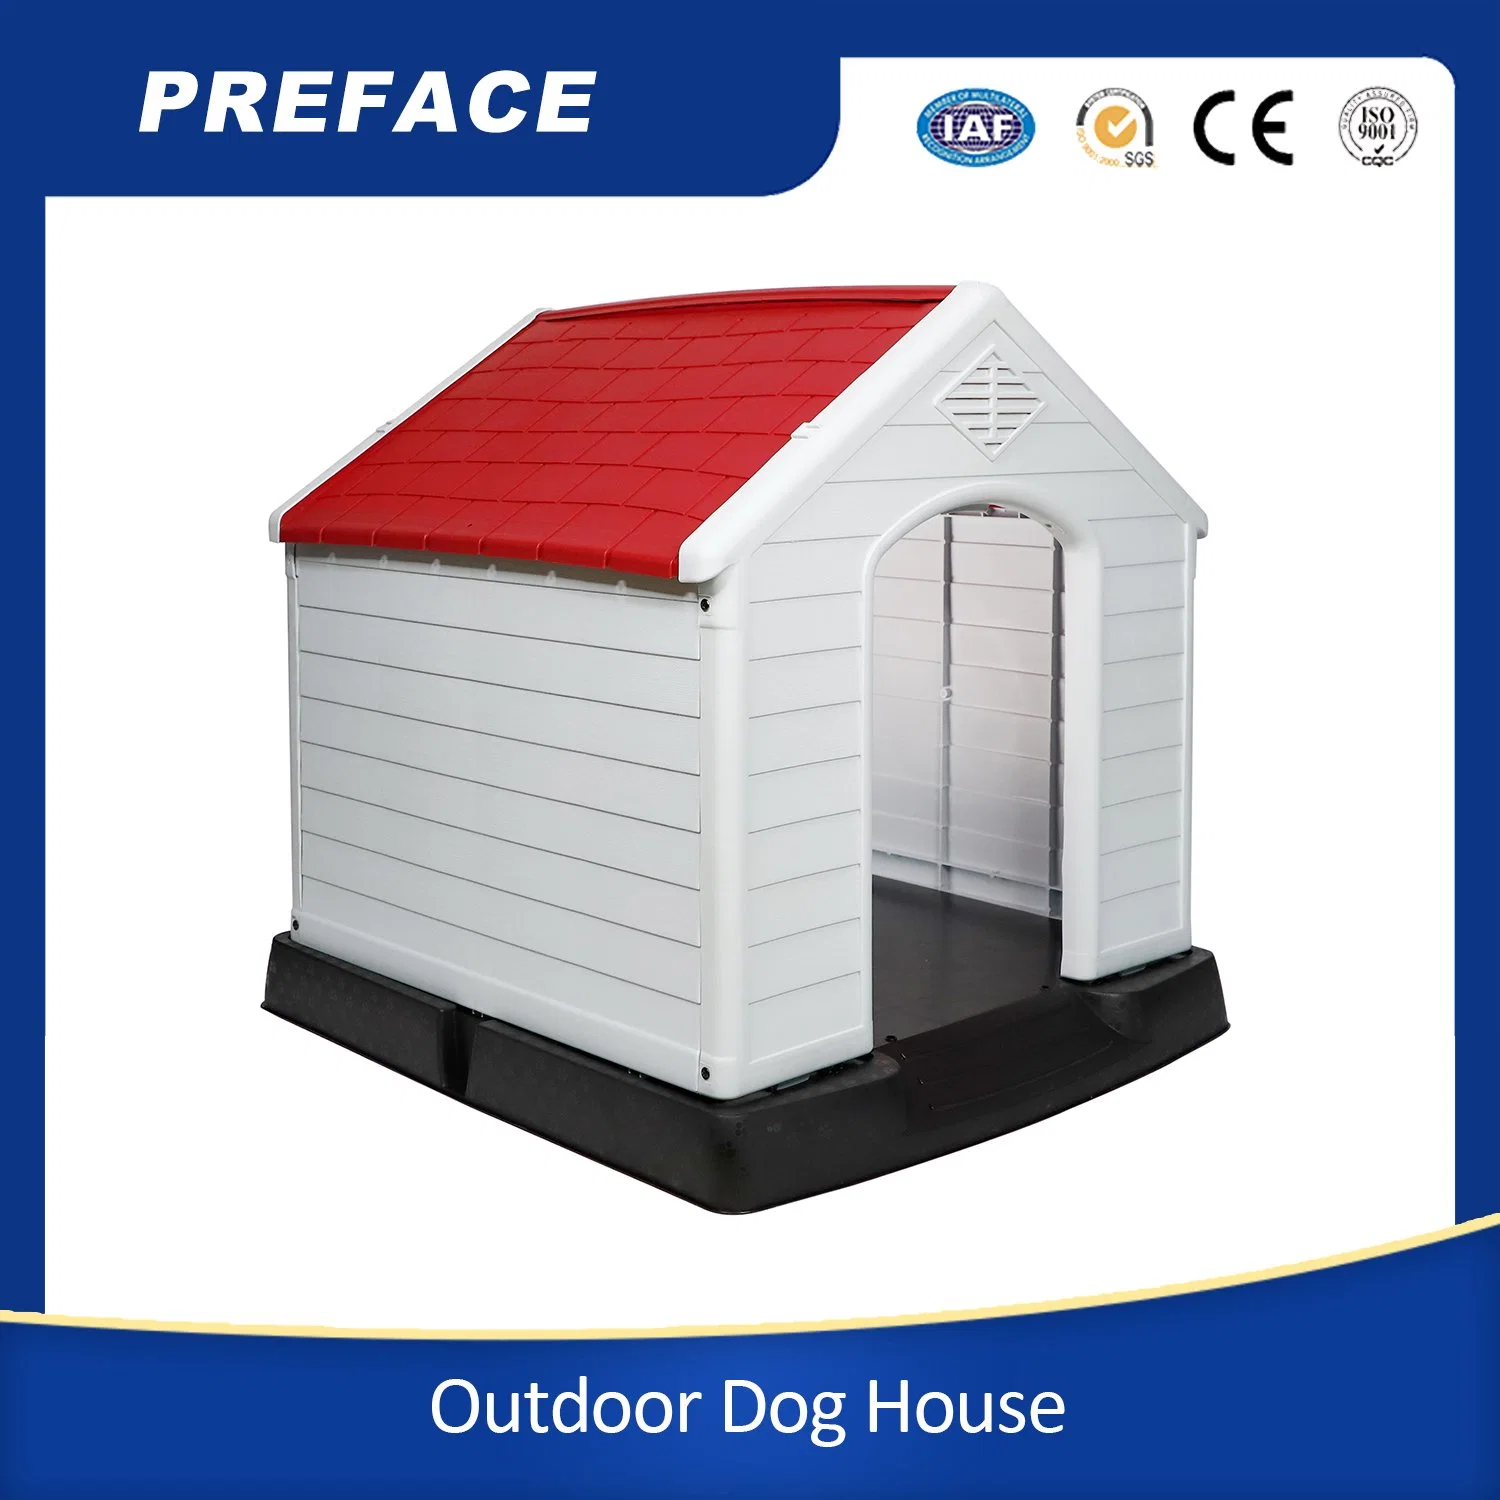 PET Dog Kennel impermeável e ventilado para todos os tipos de tempo Dog House Exterior plástico Pet Dog House